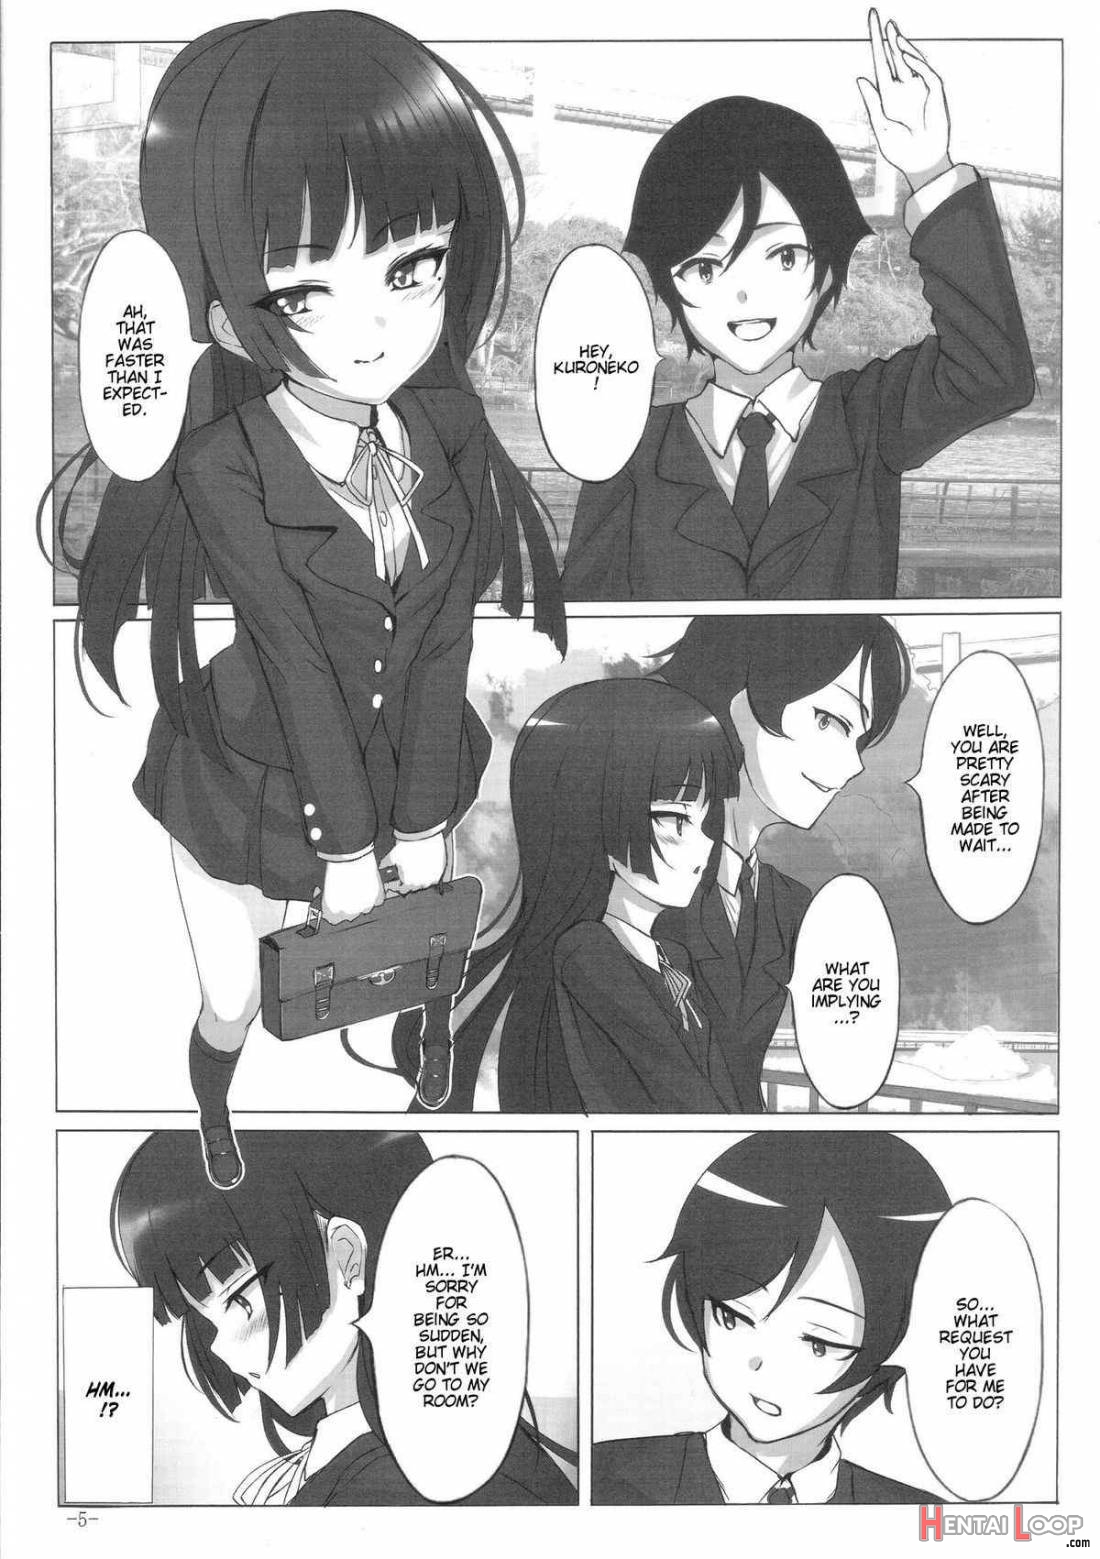 Maneki Neko page 3